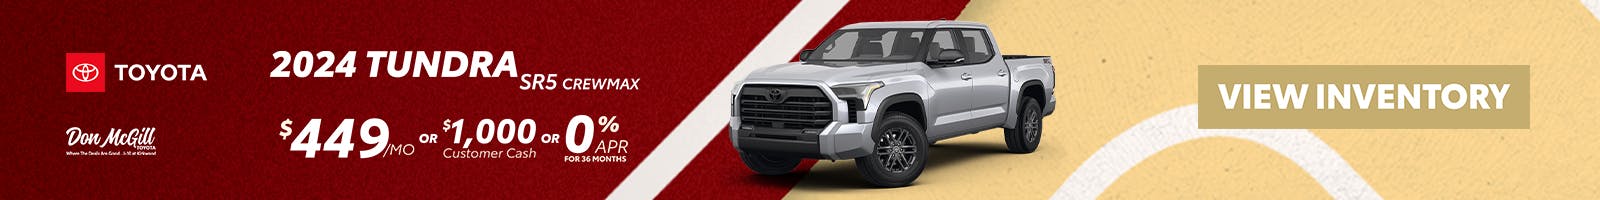 2024 Toyota Tundra Specials